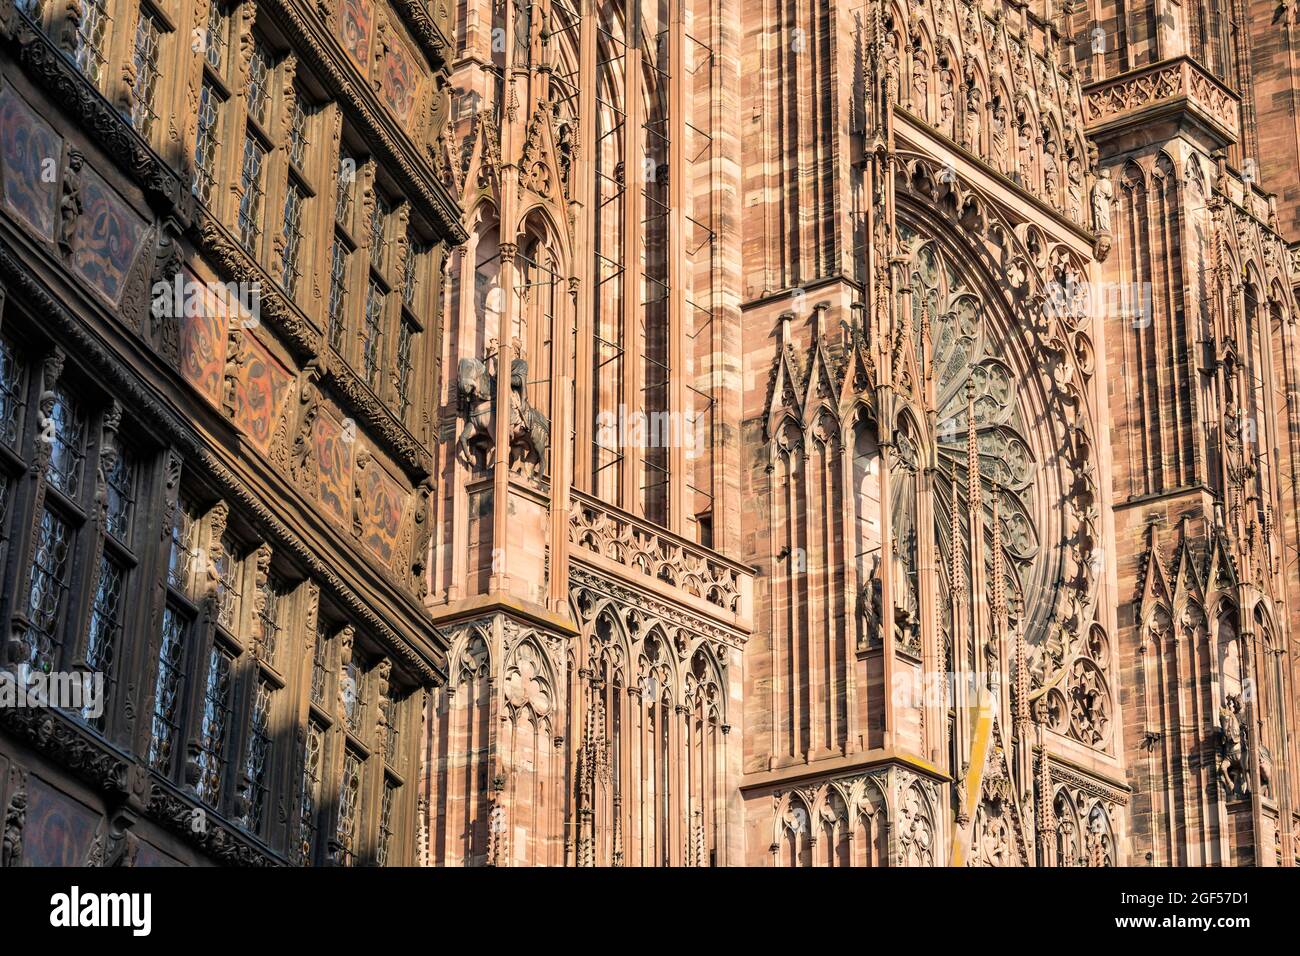 Francia, Bajo Rin, Estrasburgo, Pared exterior de la Catedral de Estrasburgo Foto de stock